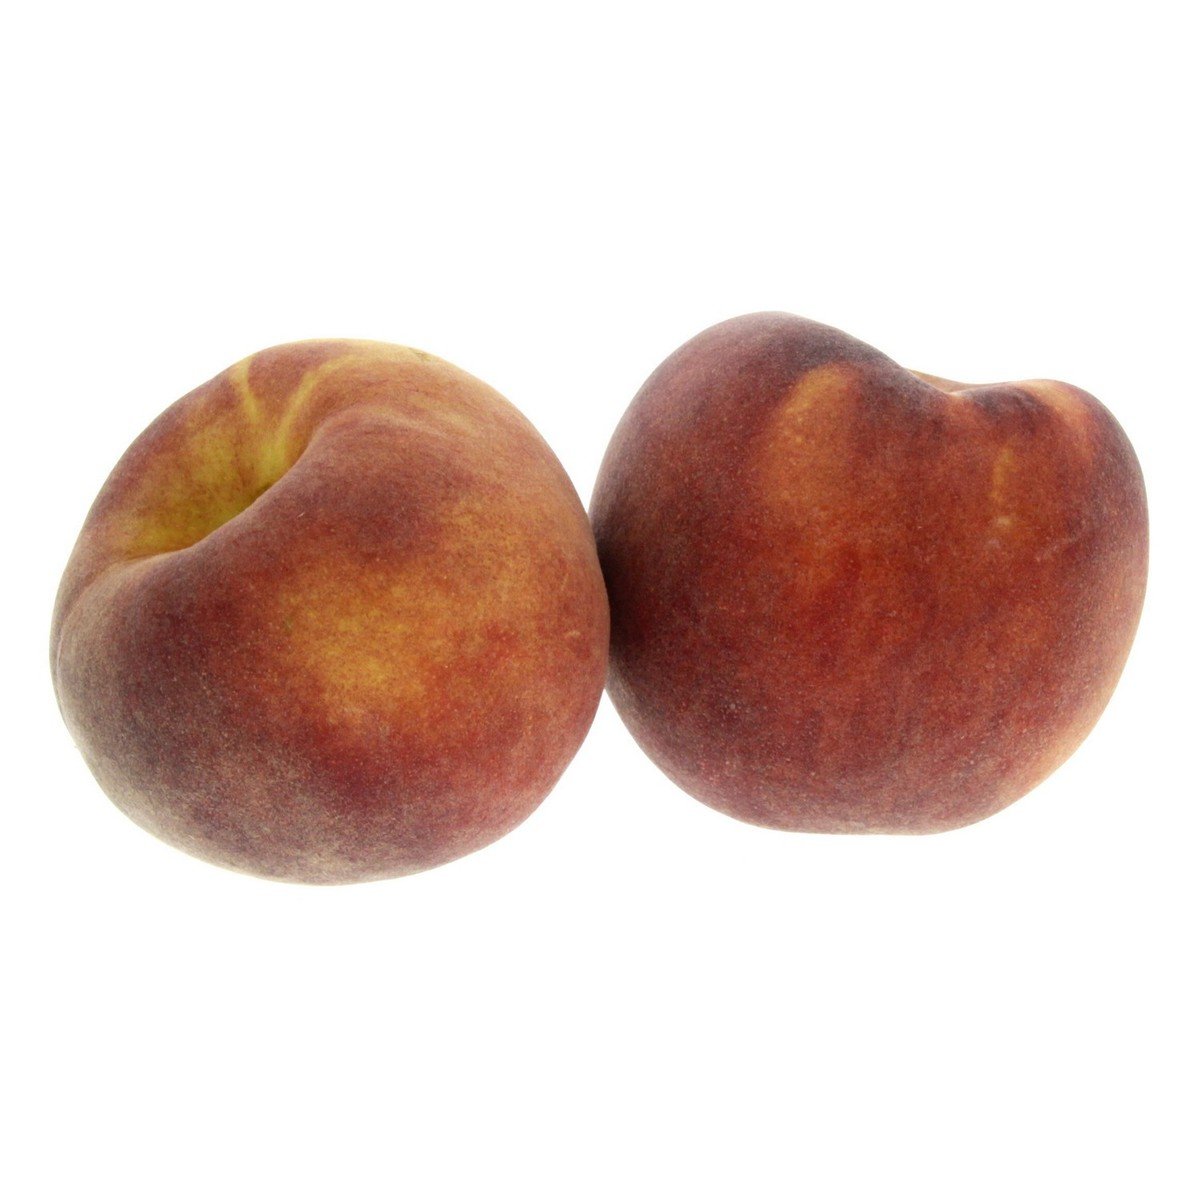 Peaches Spain 500 g